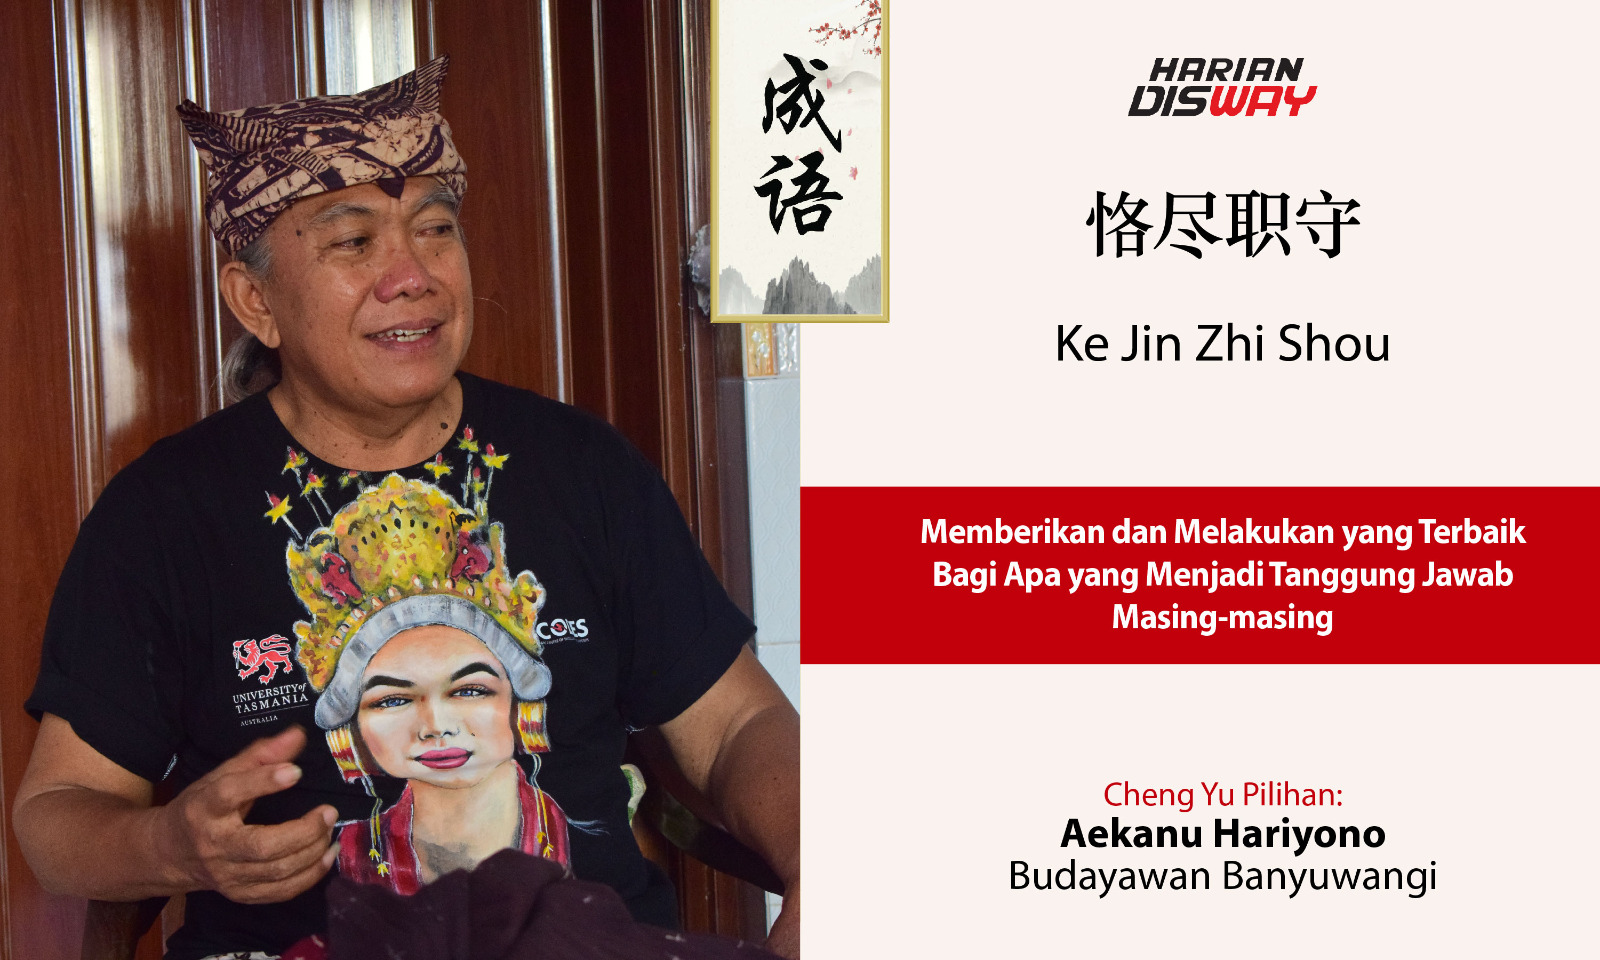 Cheng Yu Pilihan Budayawan Banyuwangi Aekanu Hariyono: Ke Jin Zhi Shou